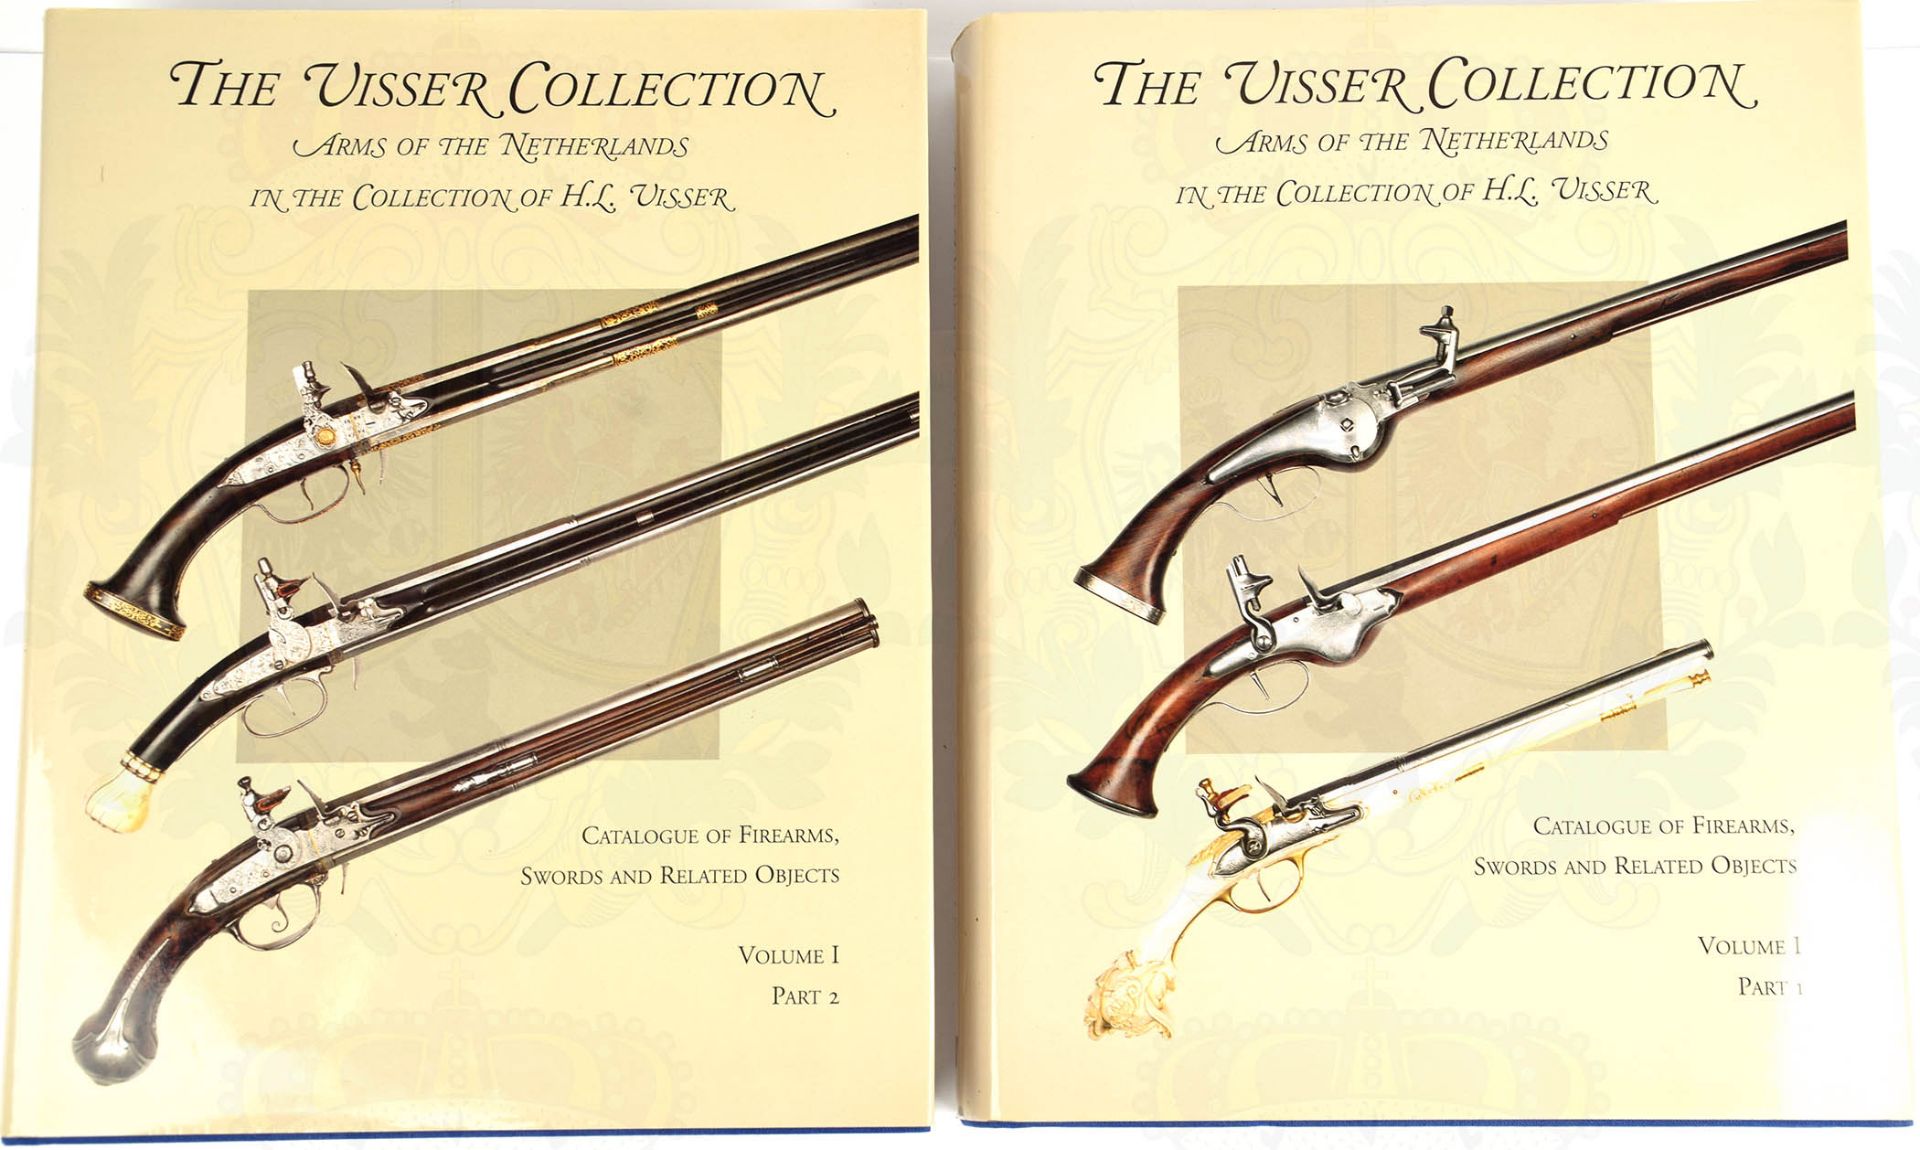 THE VISSER COLLECTION, 7 Bände Niederländische Waffensammlungen u. Hersteller, auch in Rußland, - Bild 2 aus 3